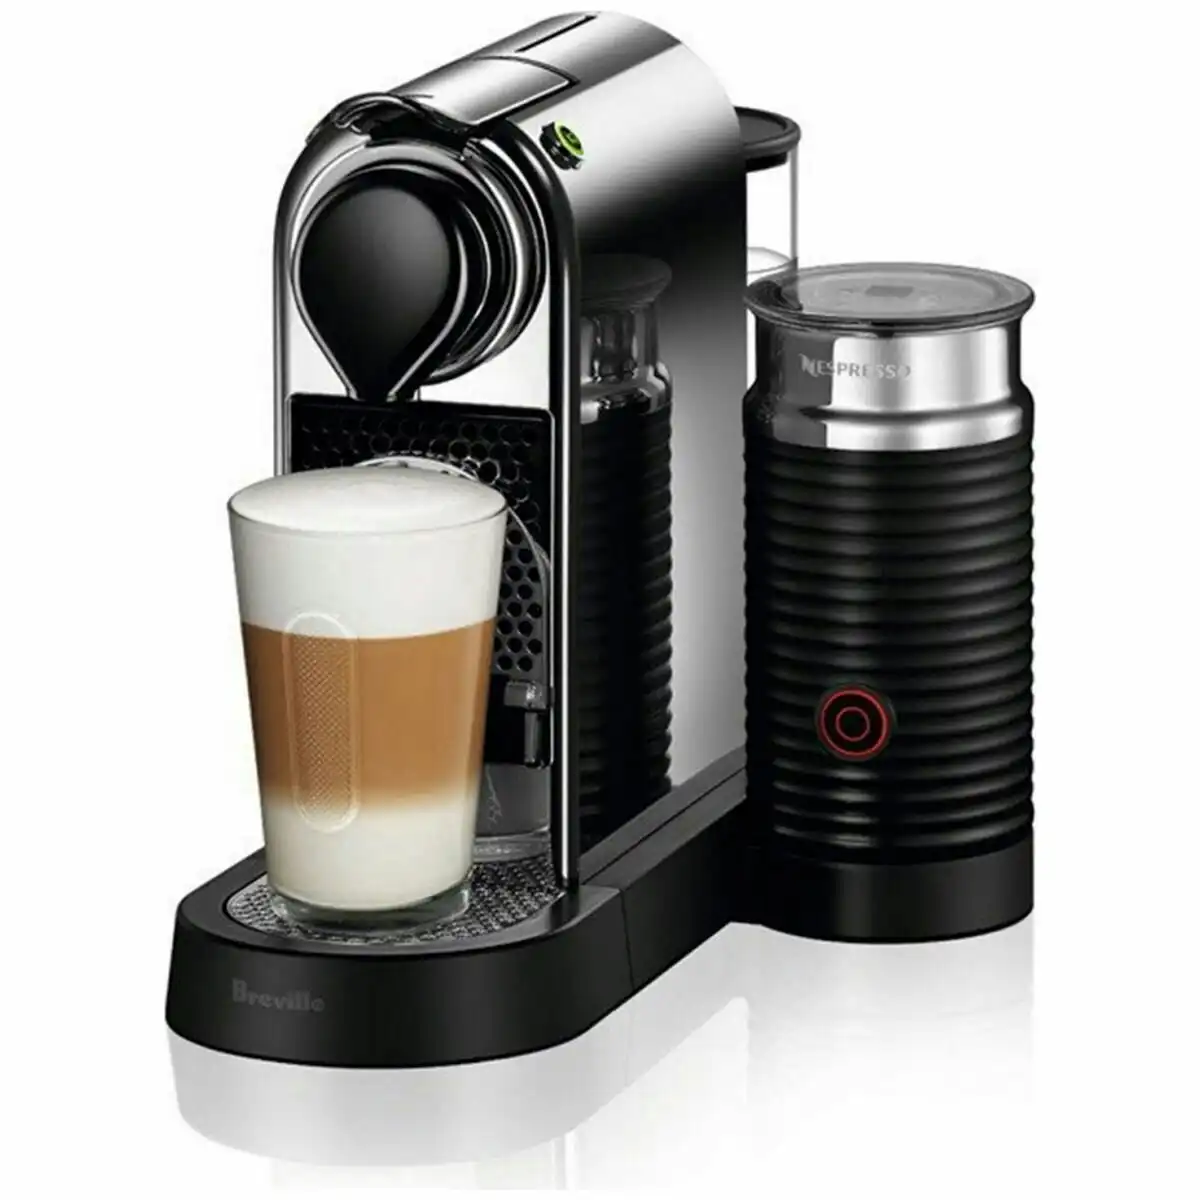 Breville Nespresso CitiZ&milk Coffee Machine